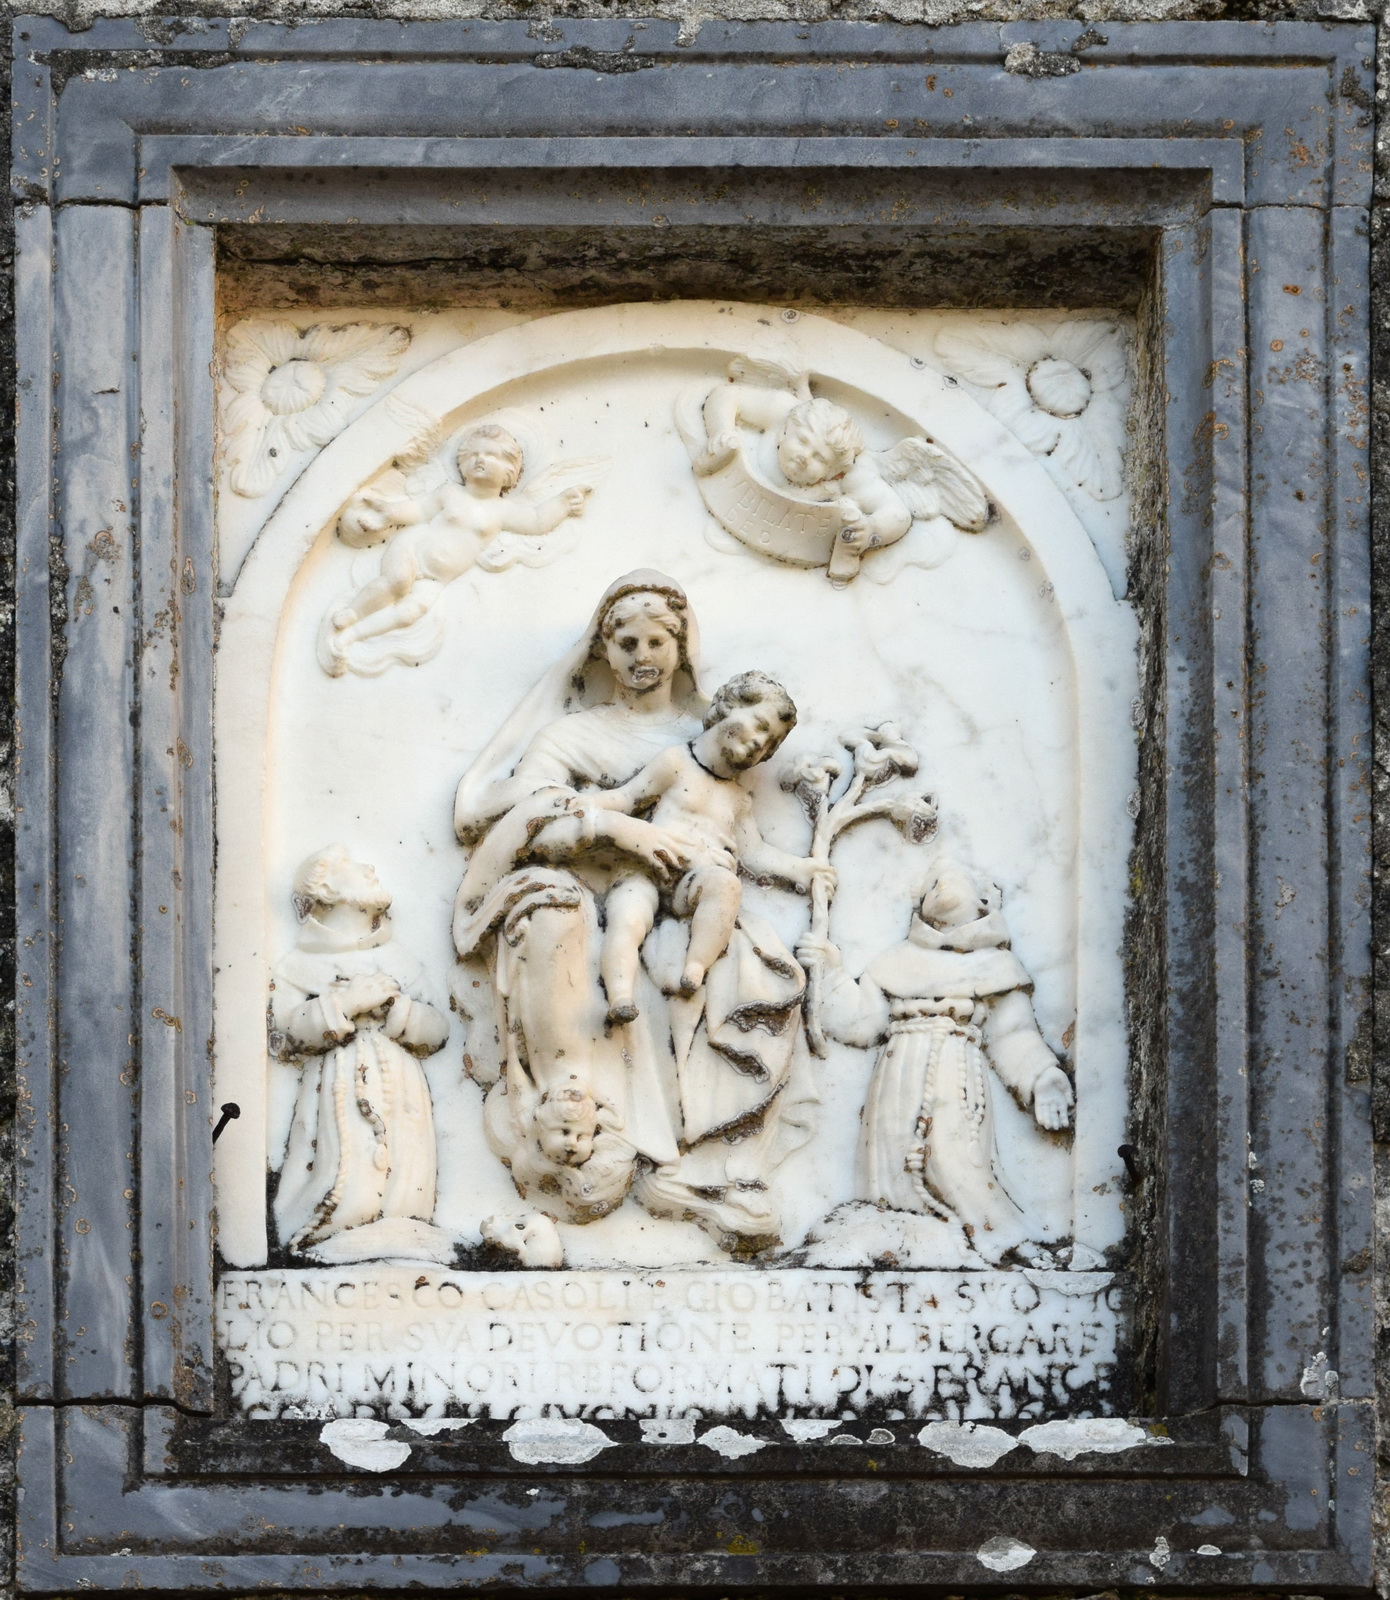 Scultore ignoto, Madonna col Bambino e i santi Francesco e Antonio (1676; marmo, 70 x 45 cm; Fosdinovo, borgo di Marciaso) 